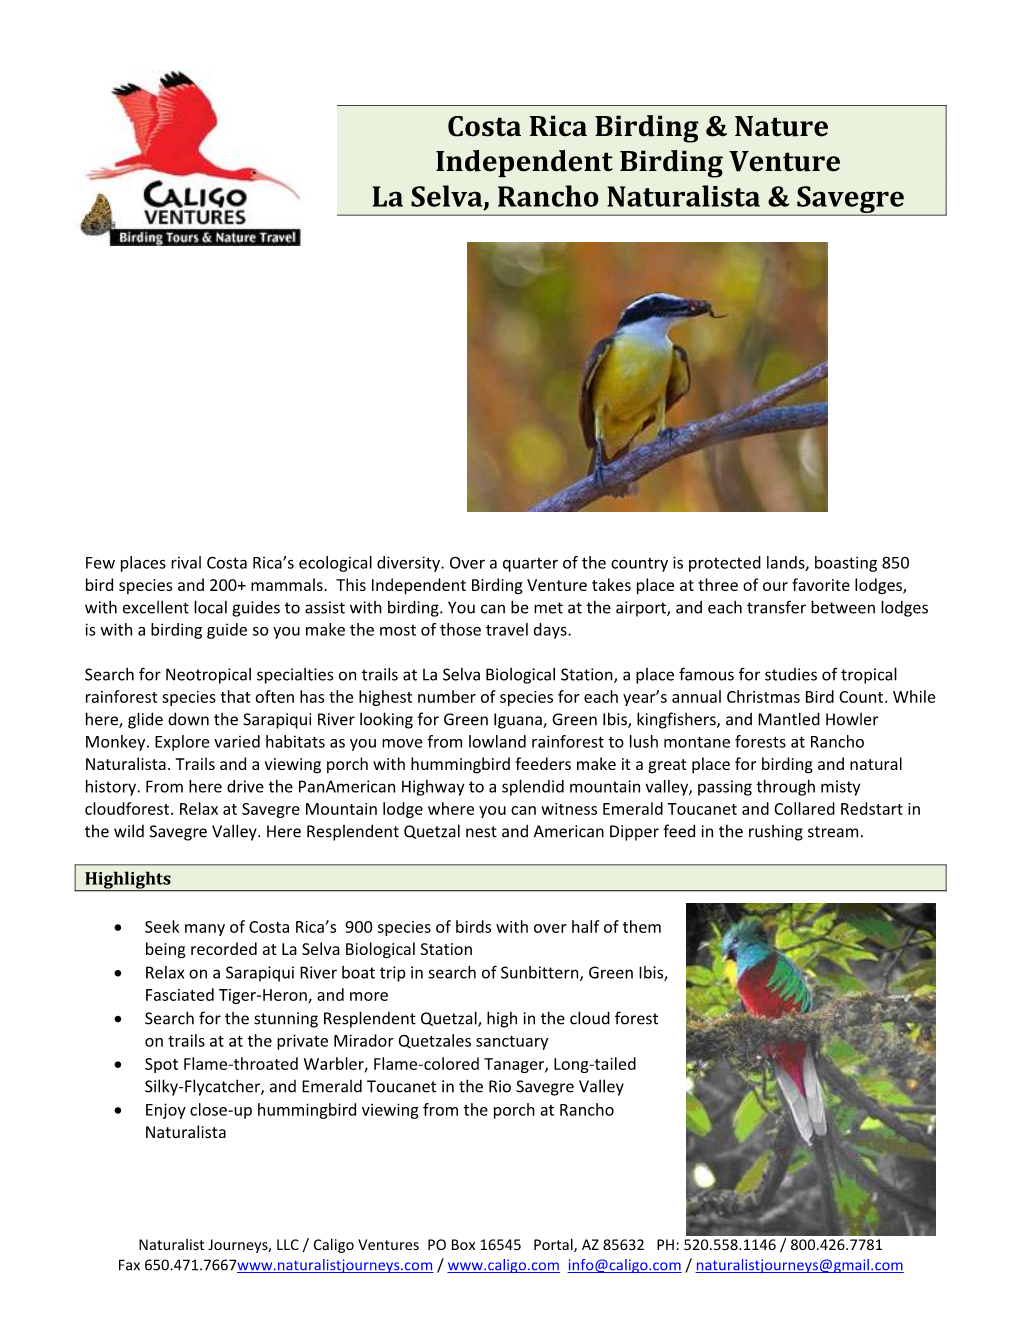 Costa Rica Birding & Nature Independent Birding Venture La